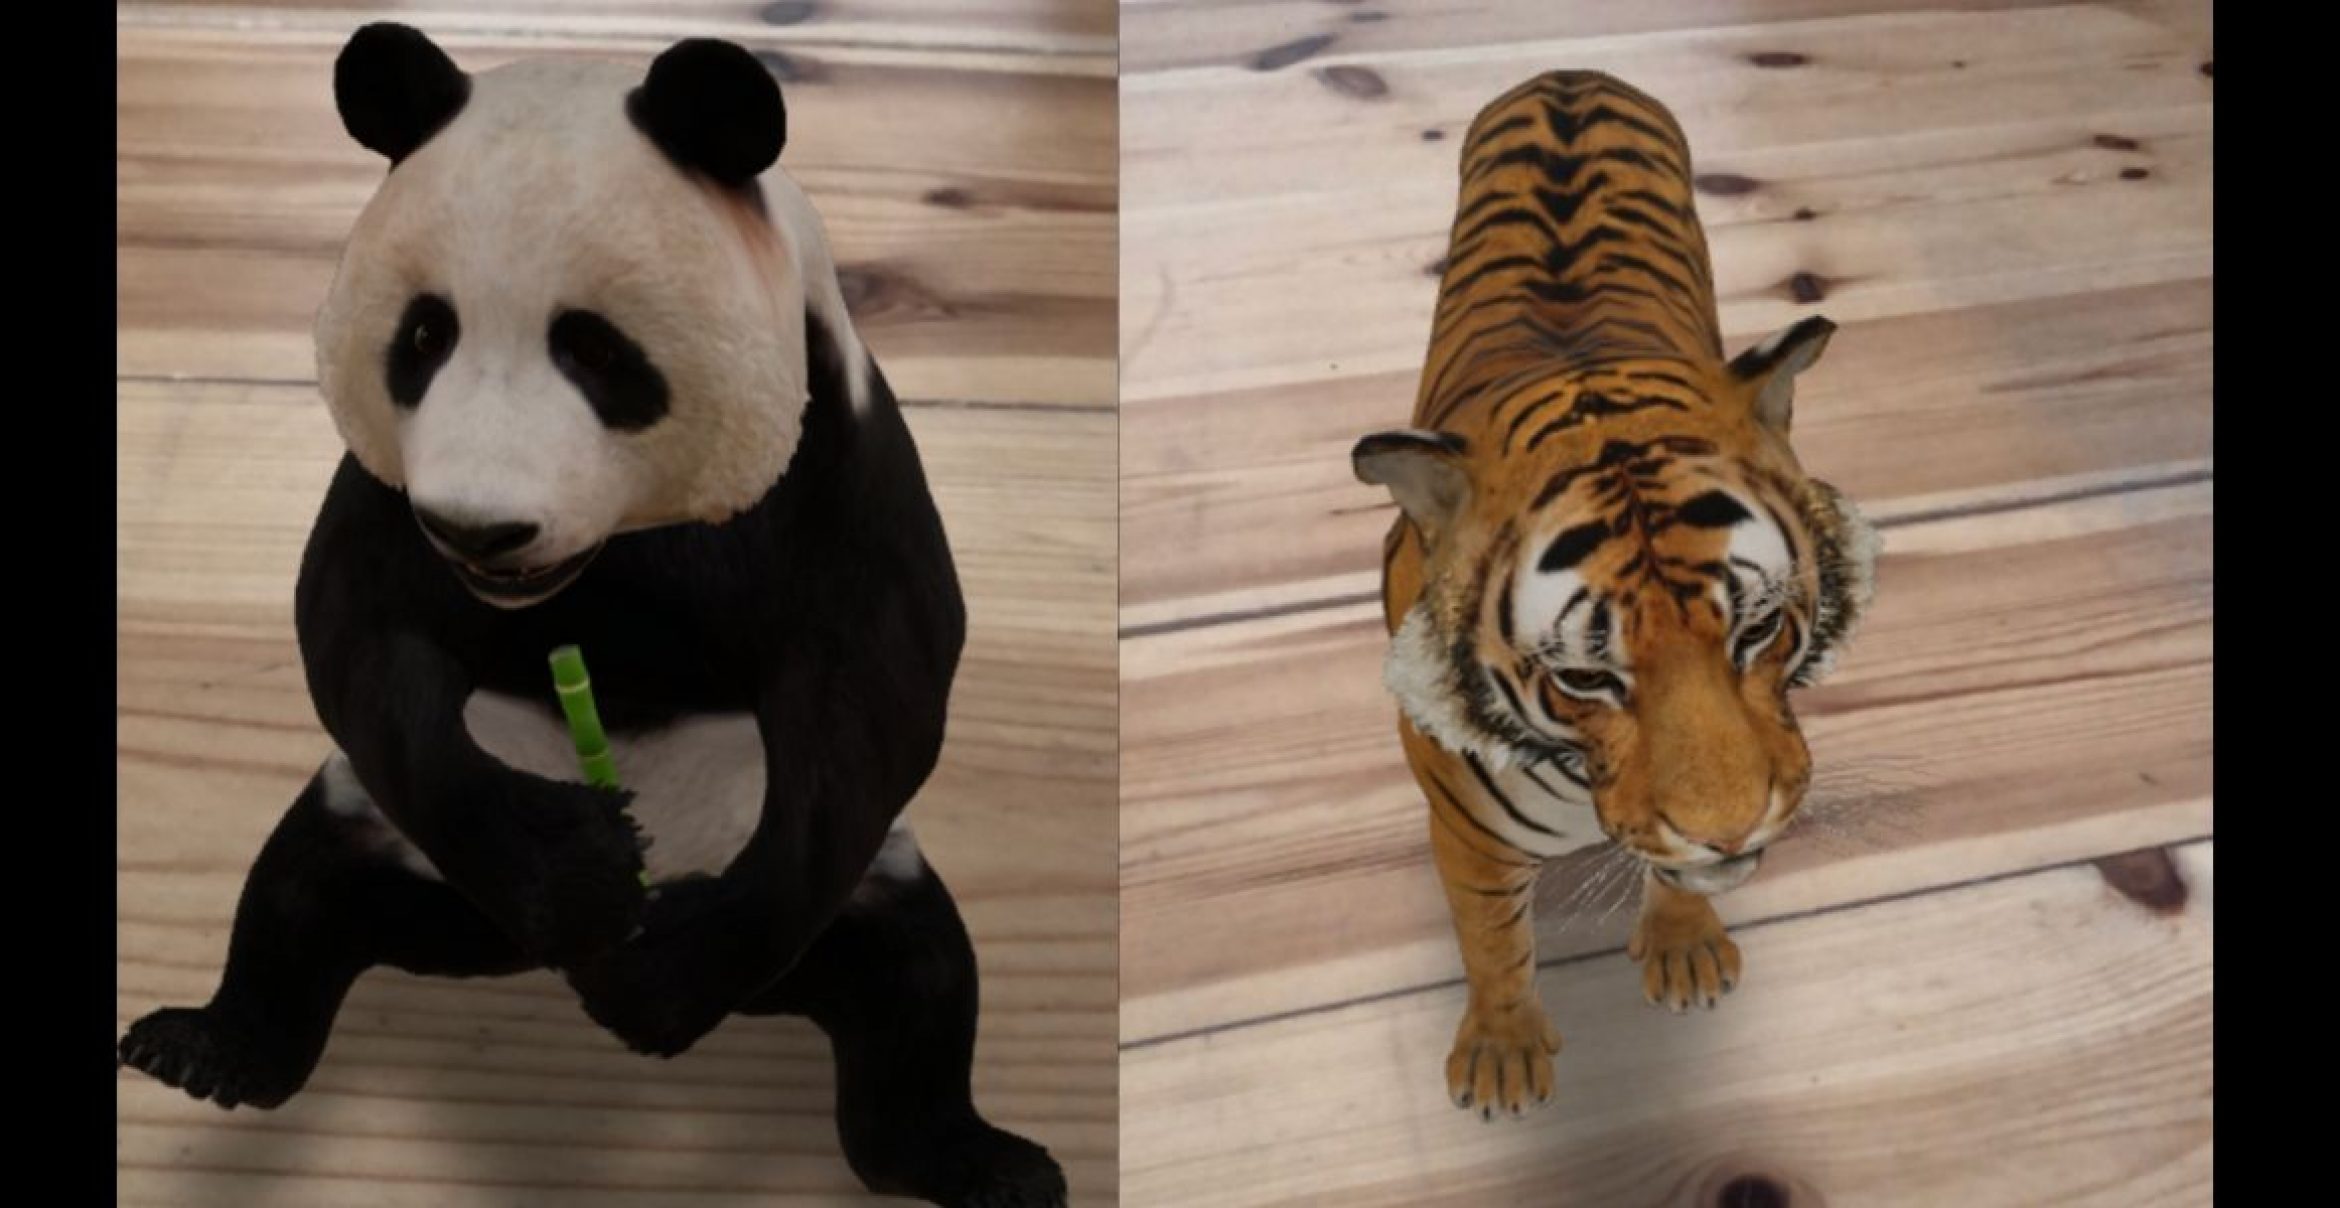 Einsam im Homeoffice? Mit Google AR kann man sich Pandas, Tiger und Co. in die vier Wände holen